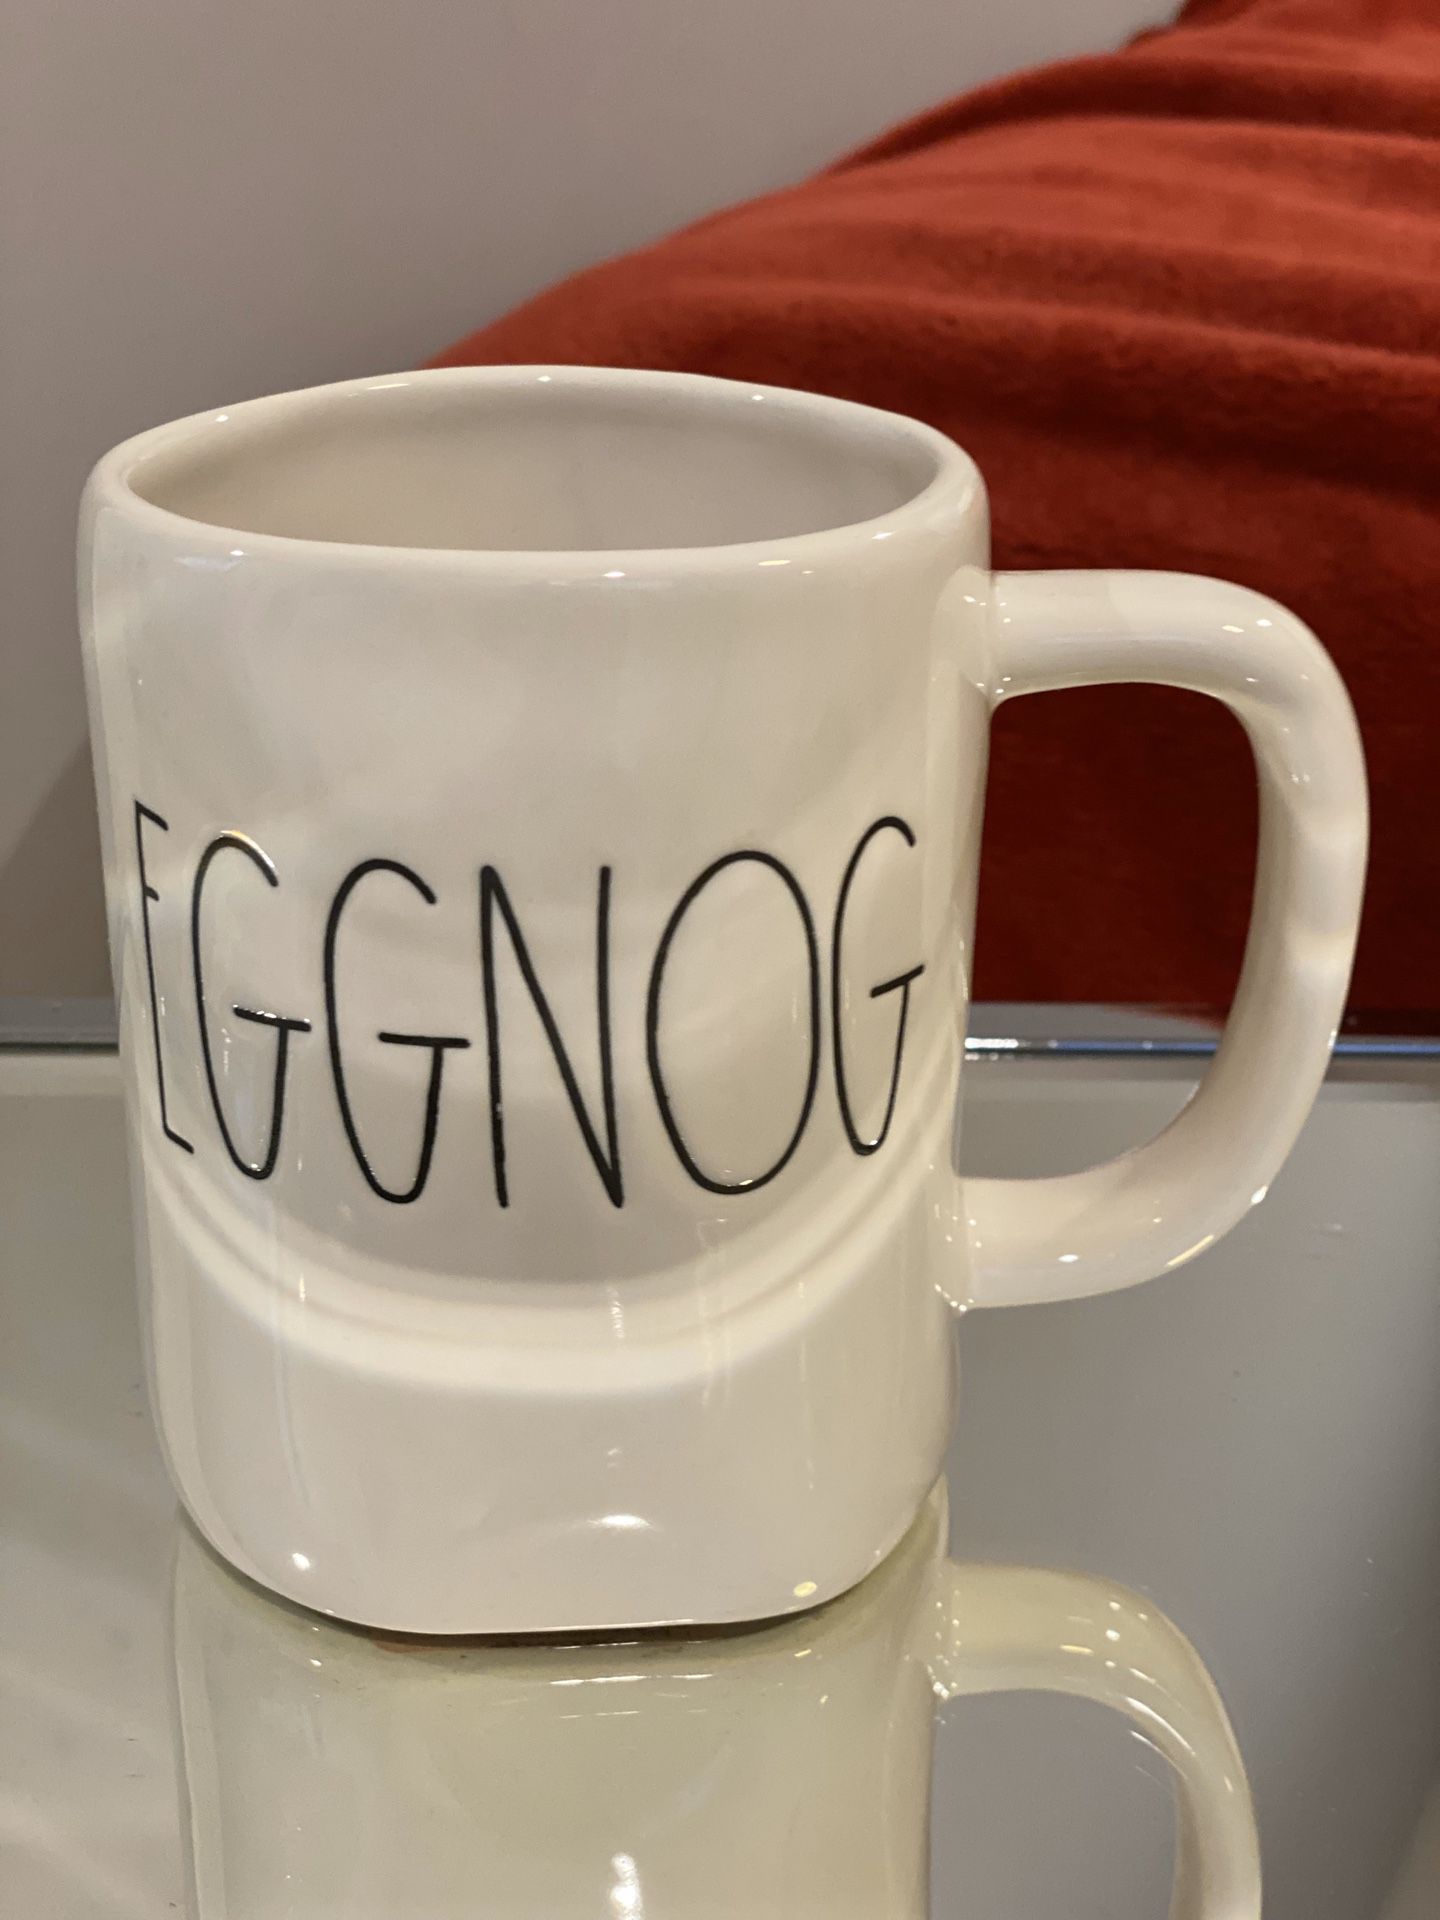 Rae Dunn “Eggnog” mug